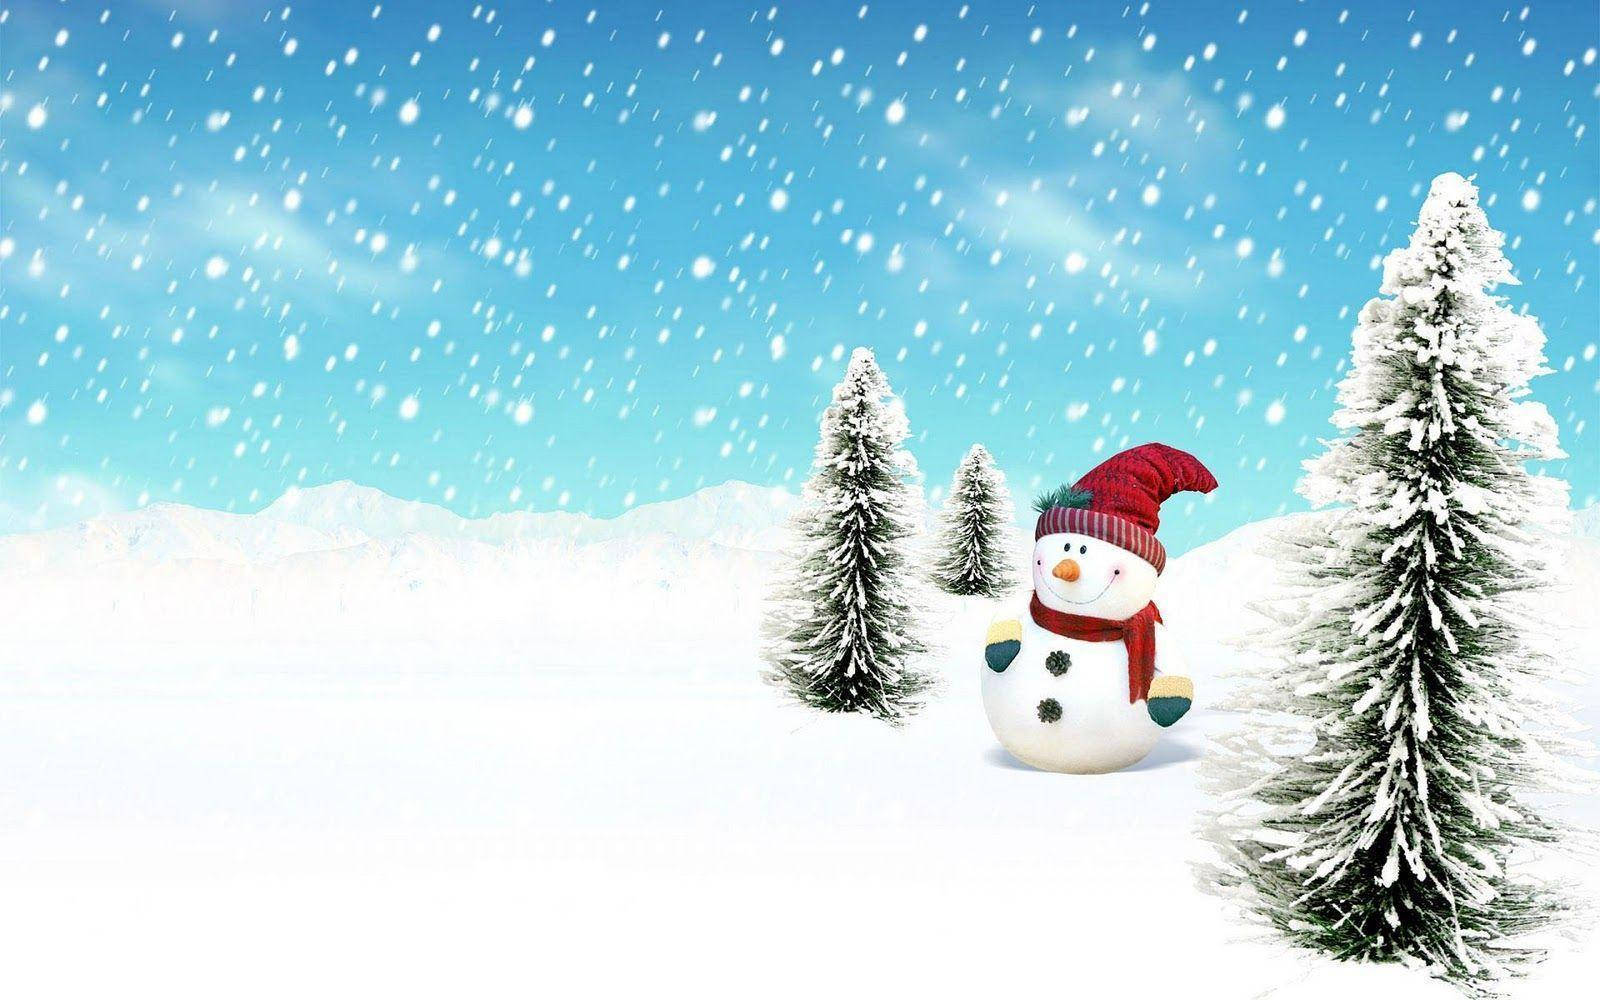 Snowman In Winter Field Wallpaper